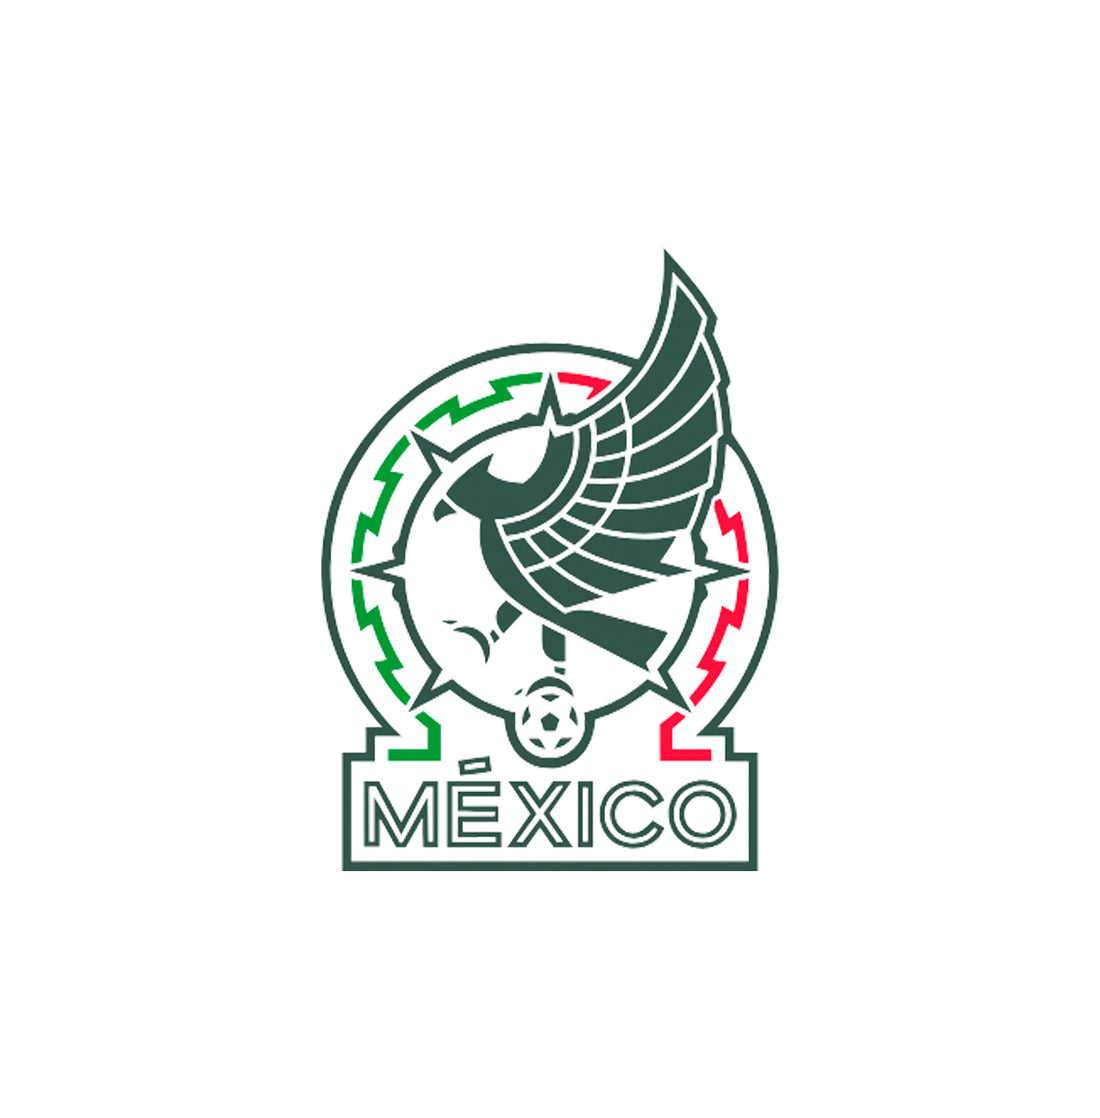  Mexico Collection